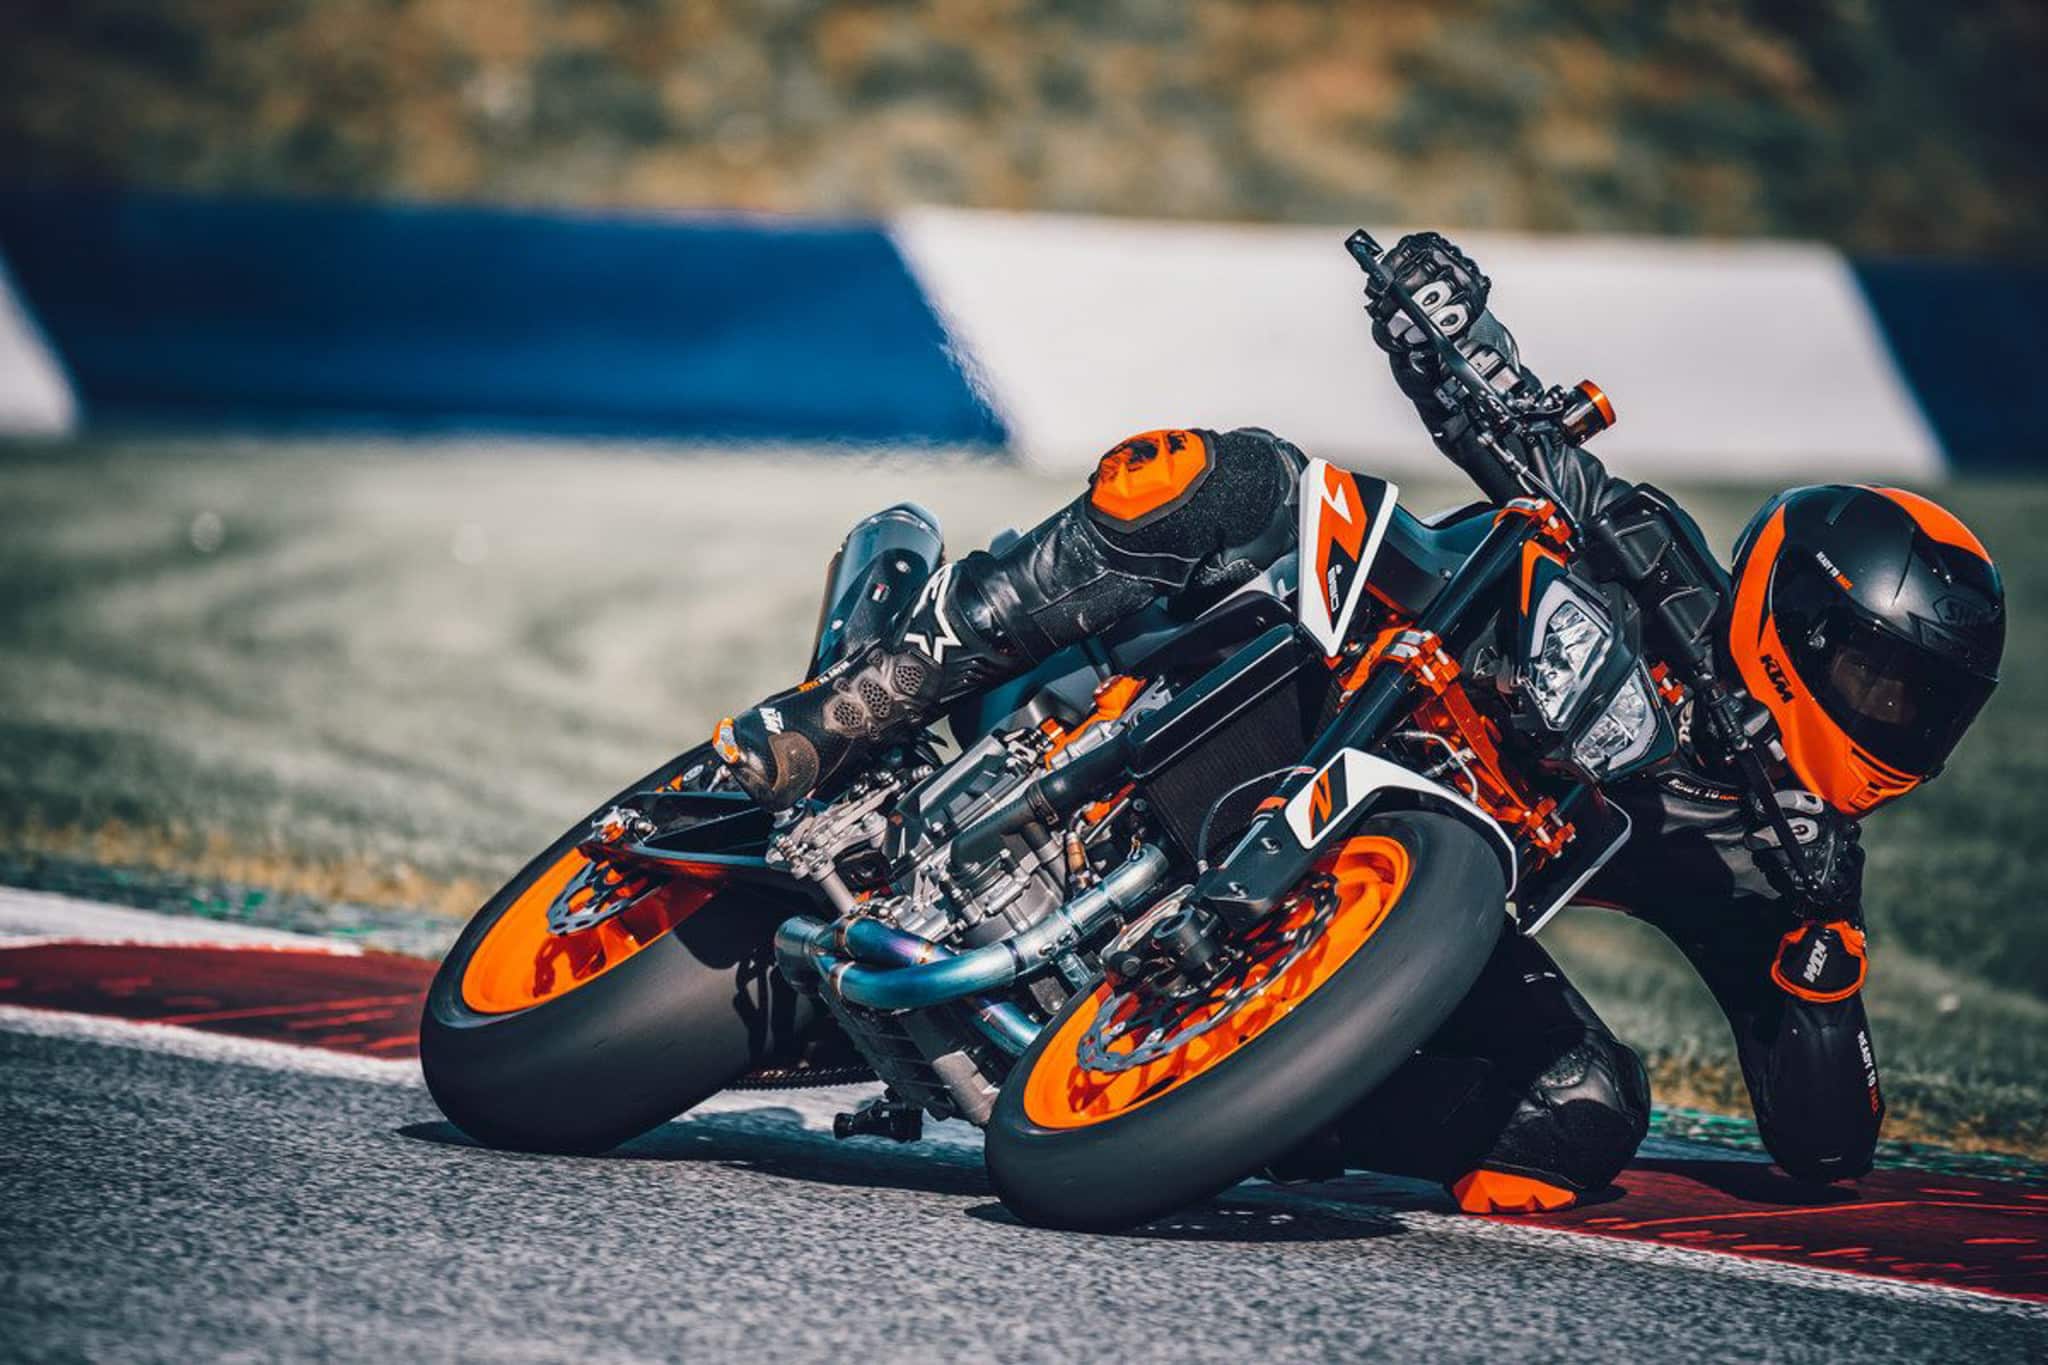 KTM zoekt wereldwijd naar Ultimate Duke Rider - Motor.NL